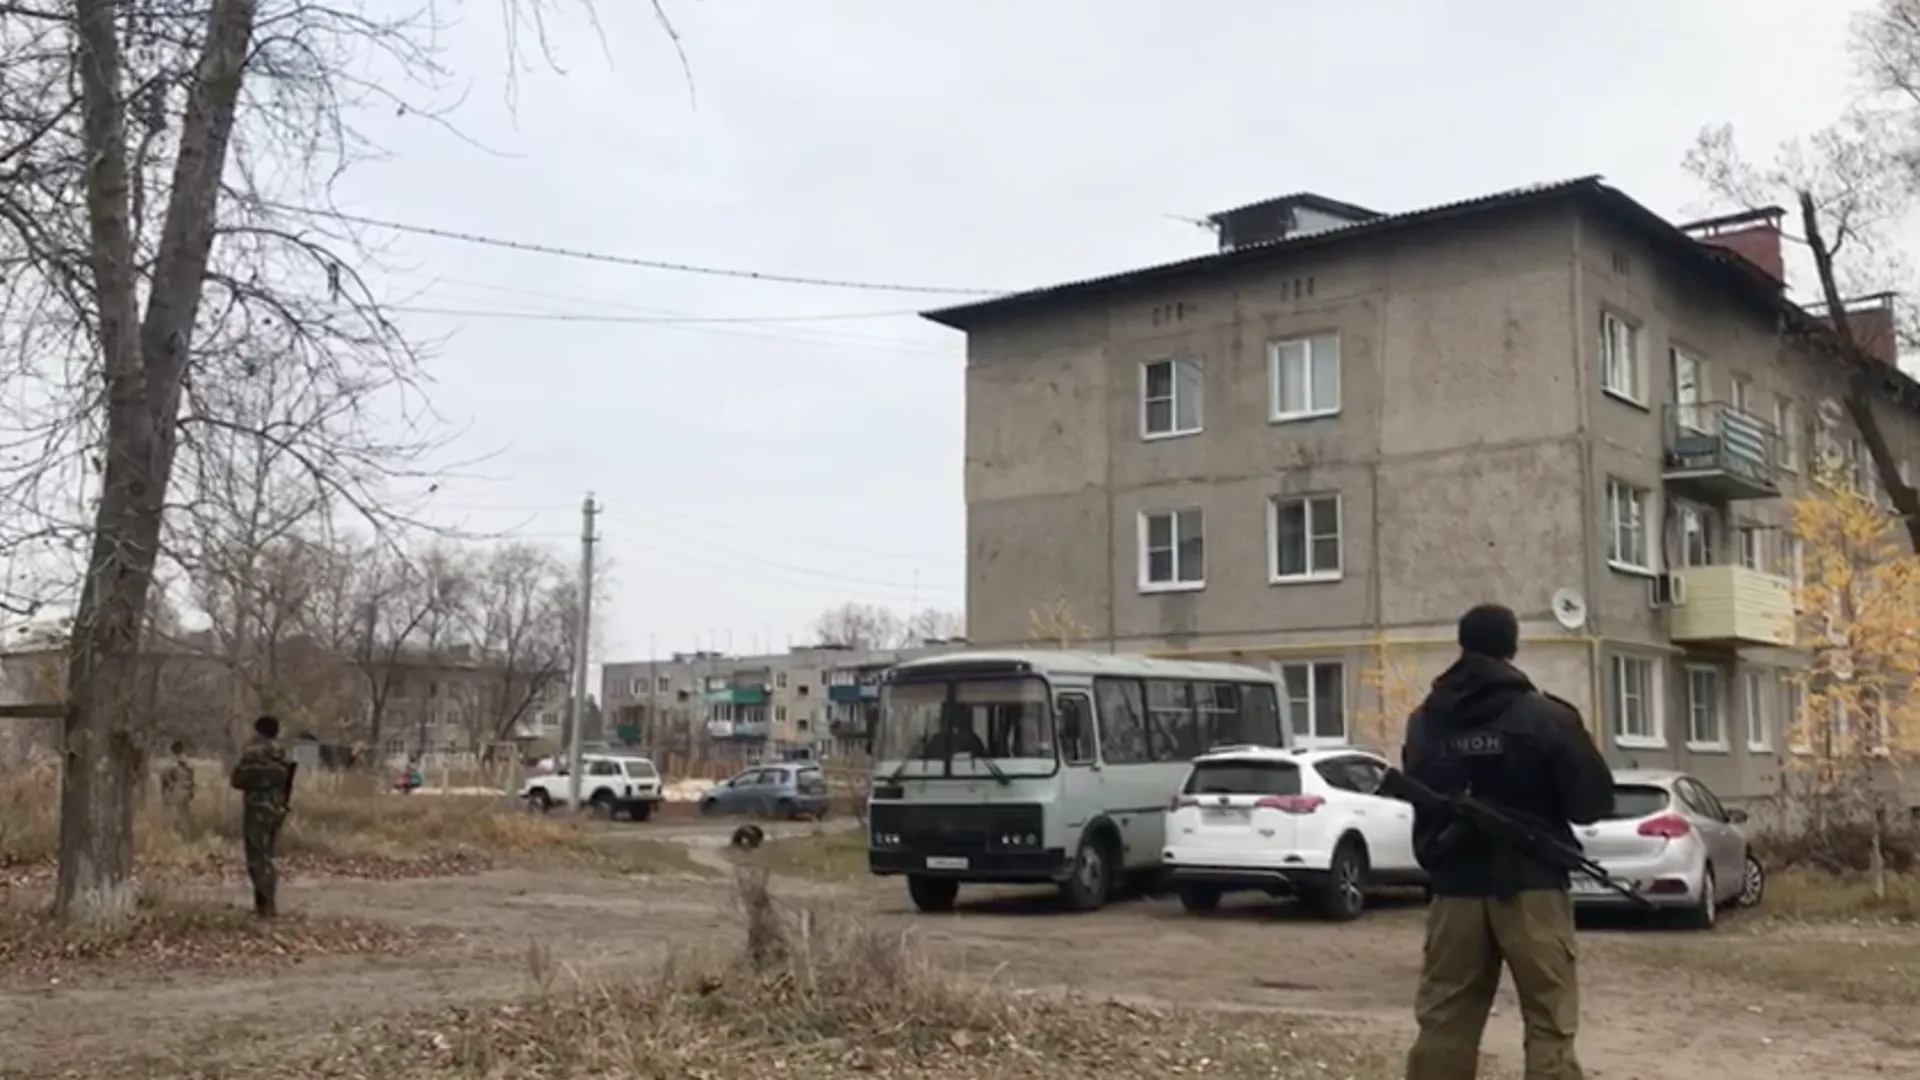 Нижегородский стрелок повредил соседний дом во время нападения. Видео последствий